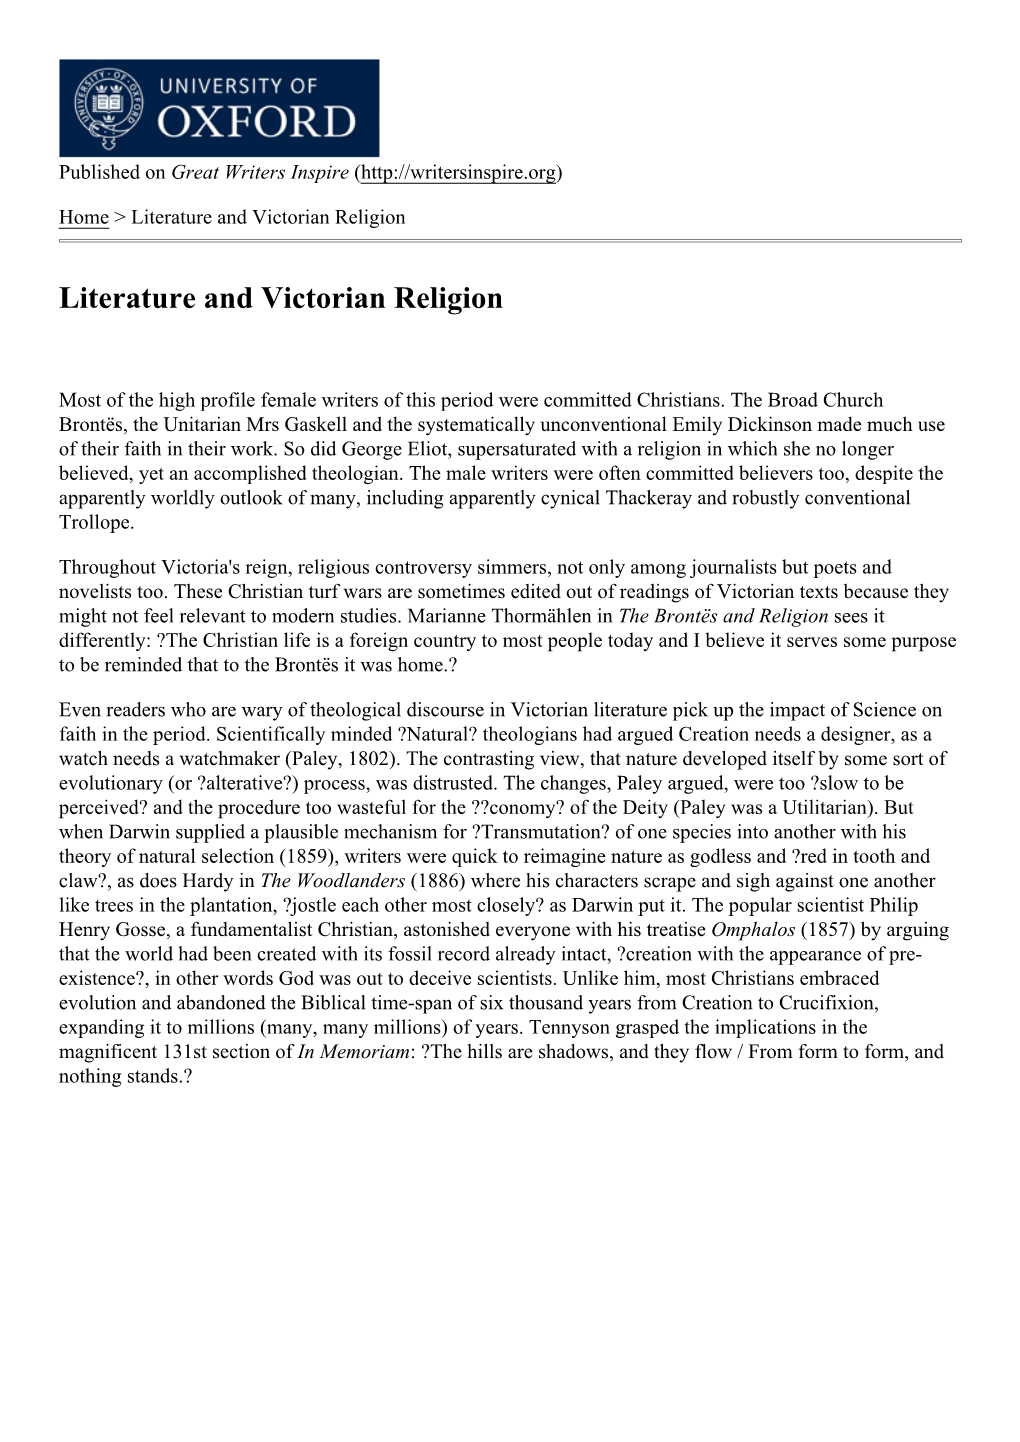 Literature and Victorian Religion